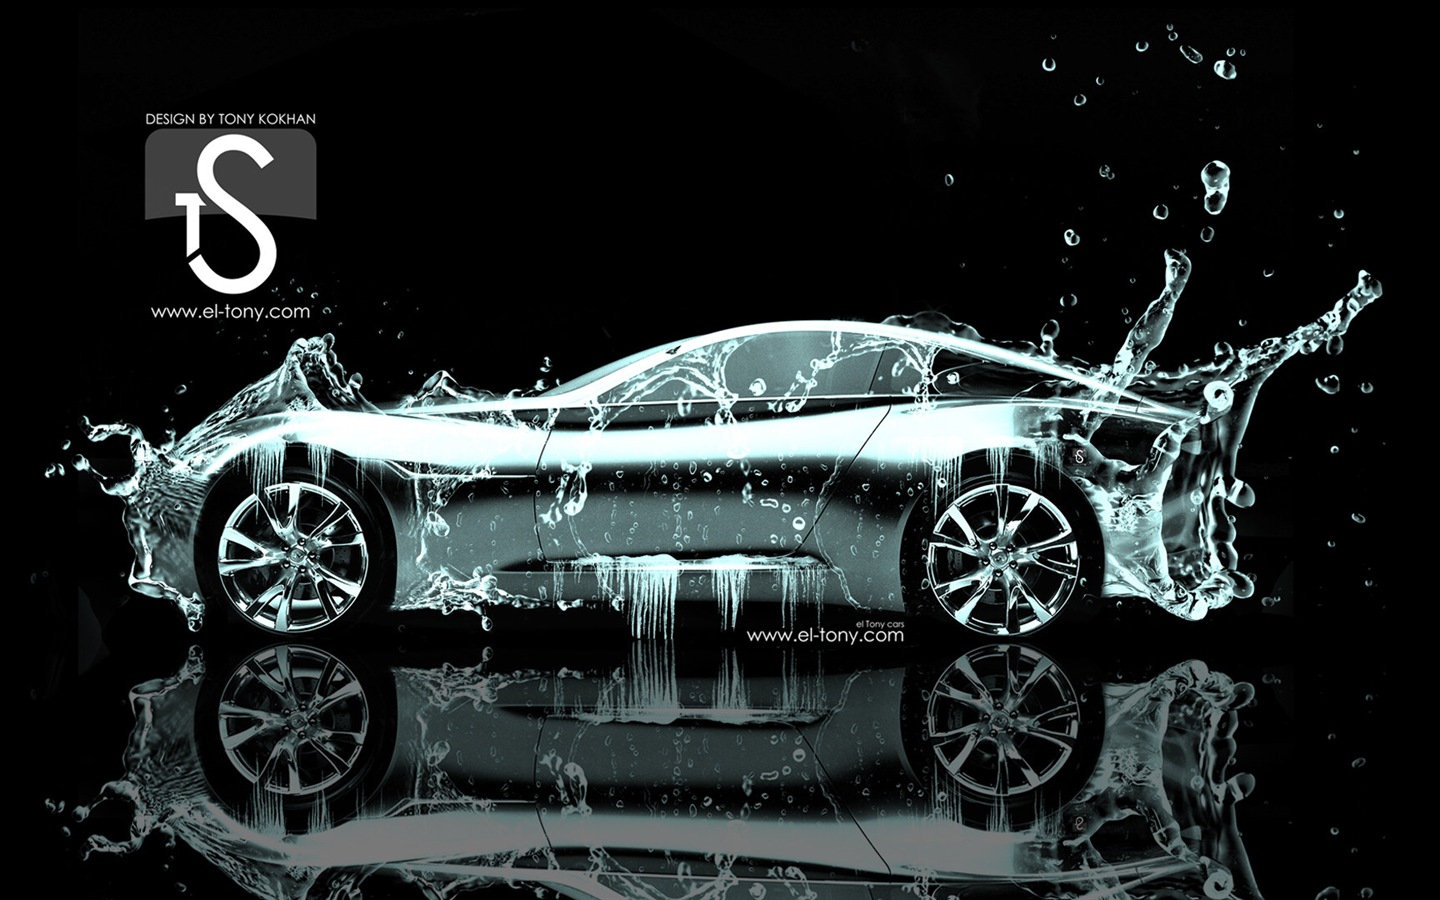 Wassertropfen spritzen, schönes Auto kreative Design Tapeten #13 - 1440x900